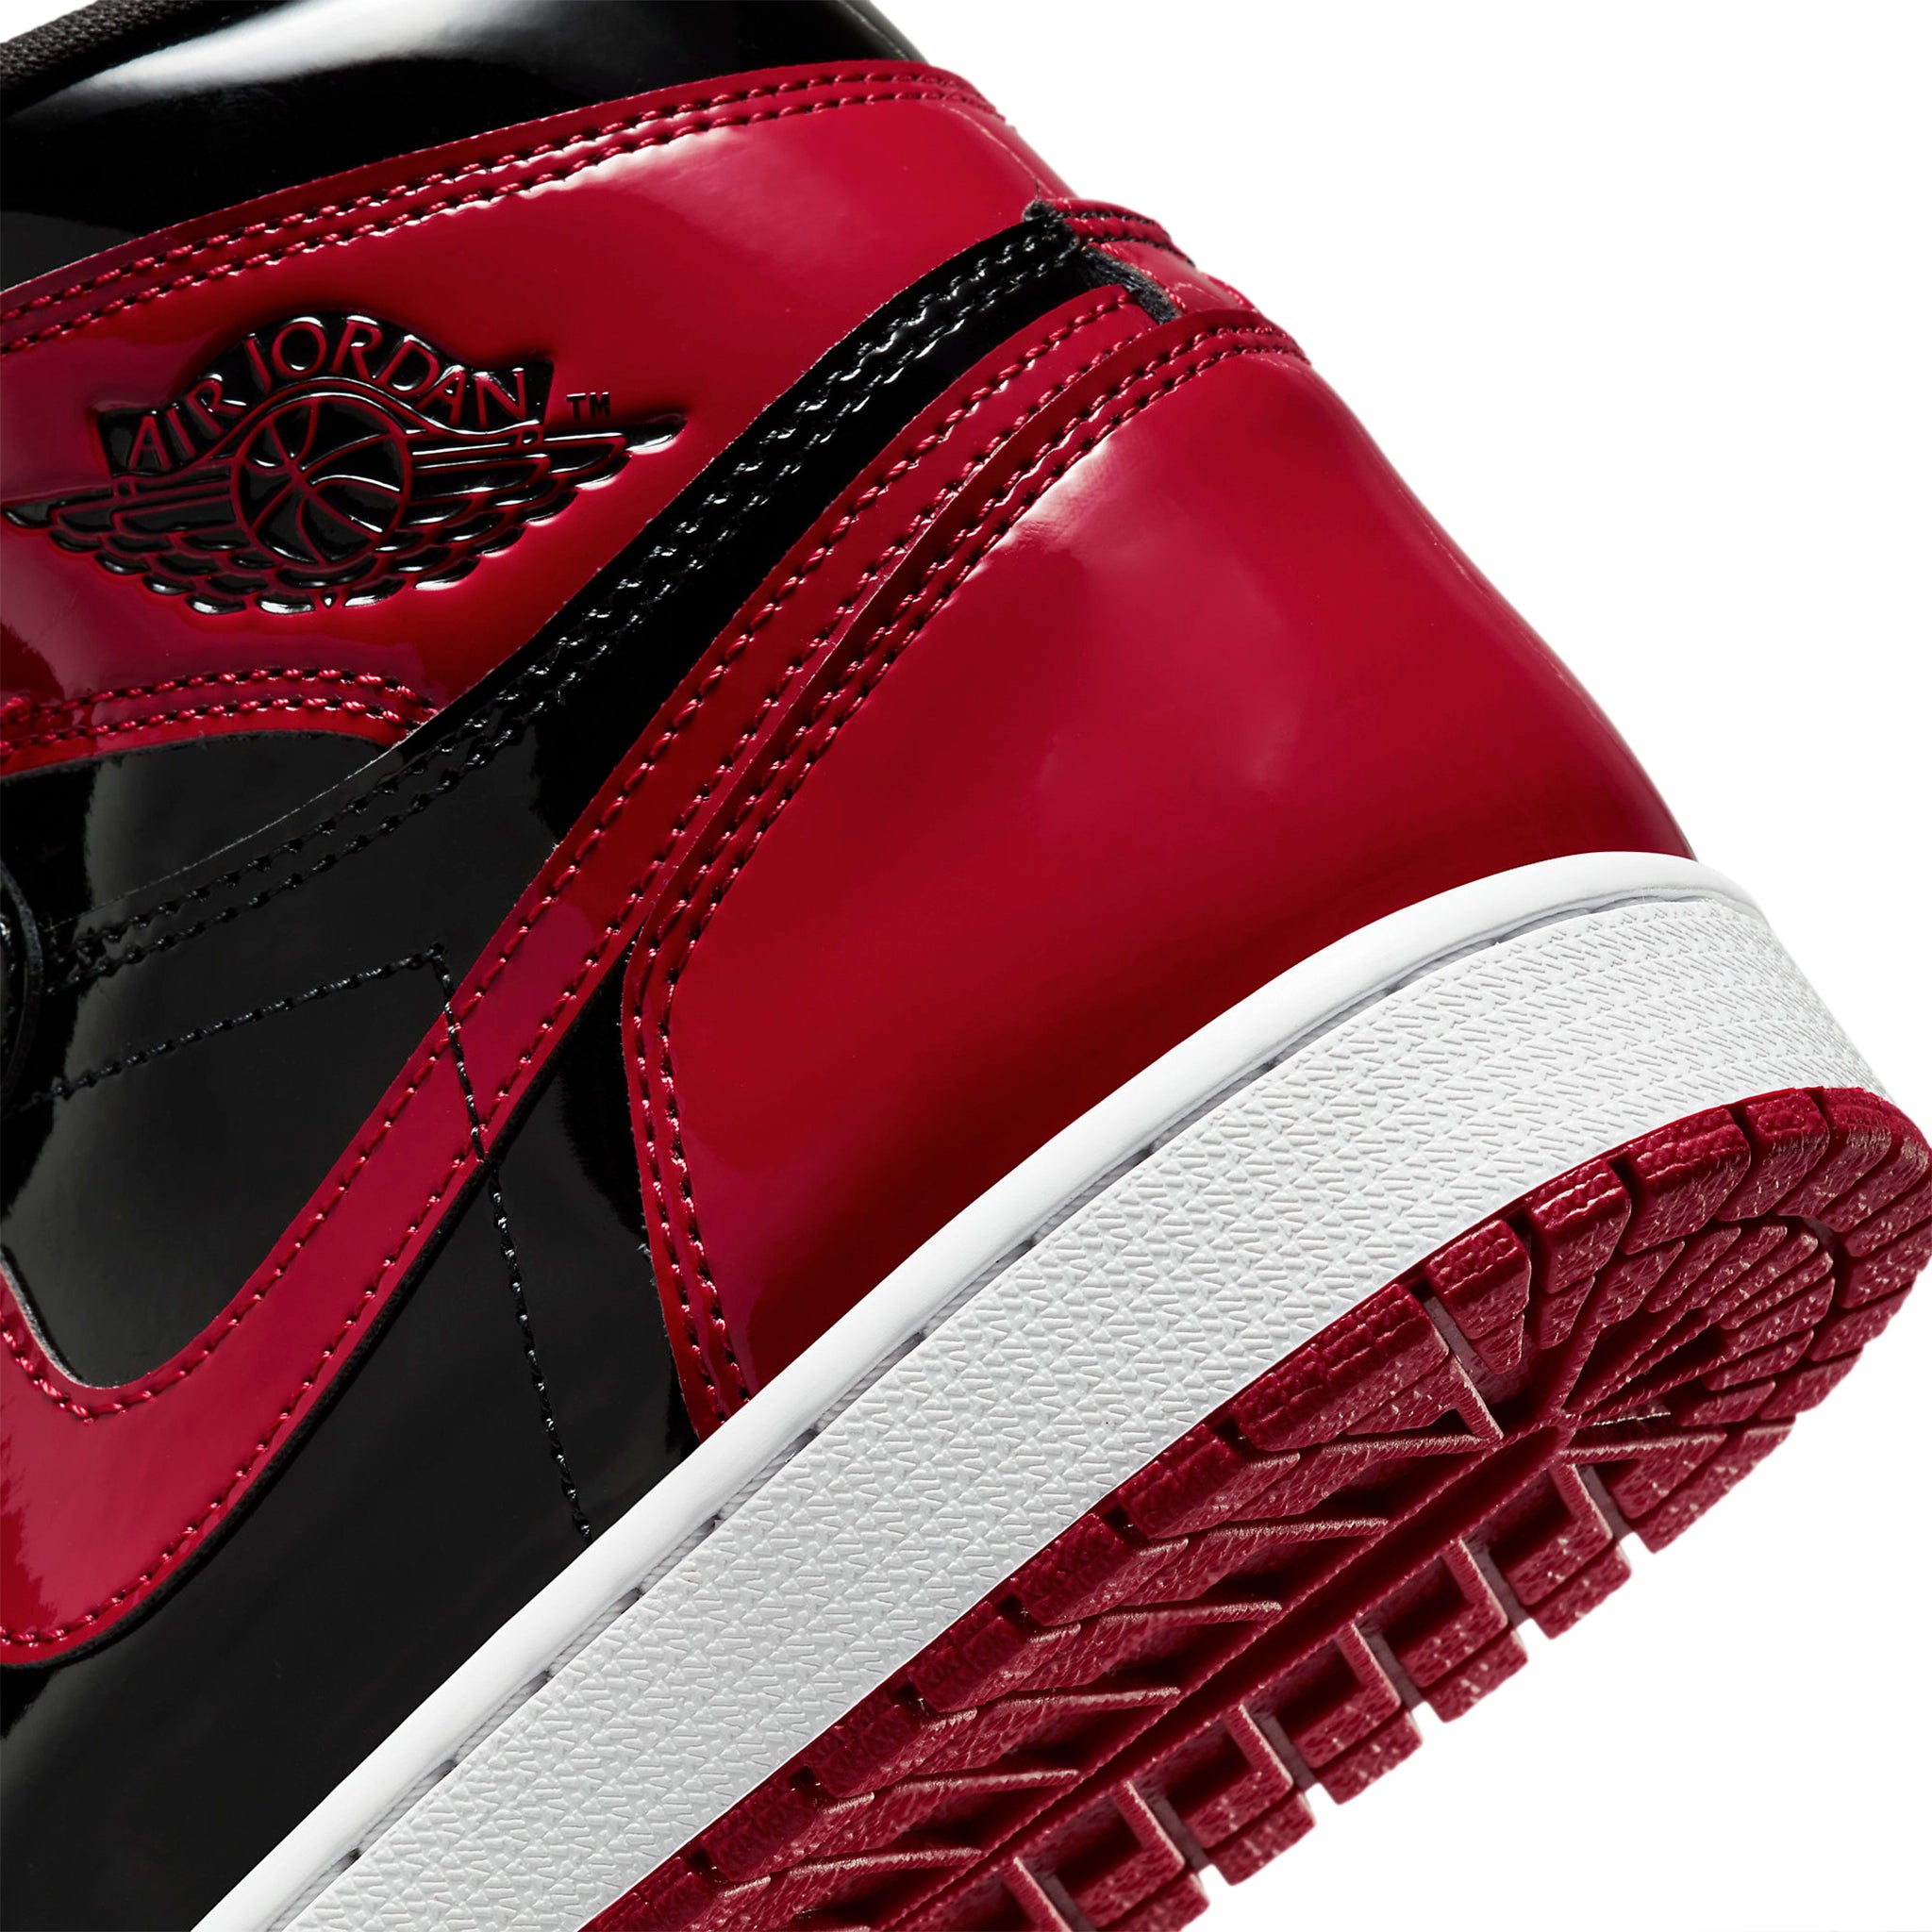 Heel view of Air Jordan 1 Retro High OG Patent Bred 555088-063